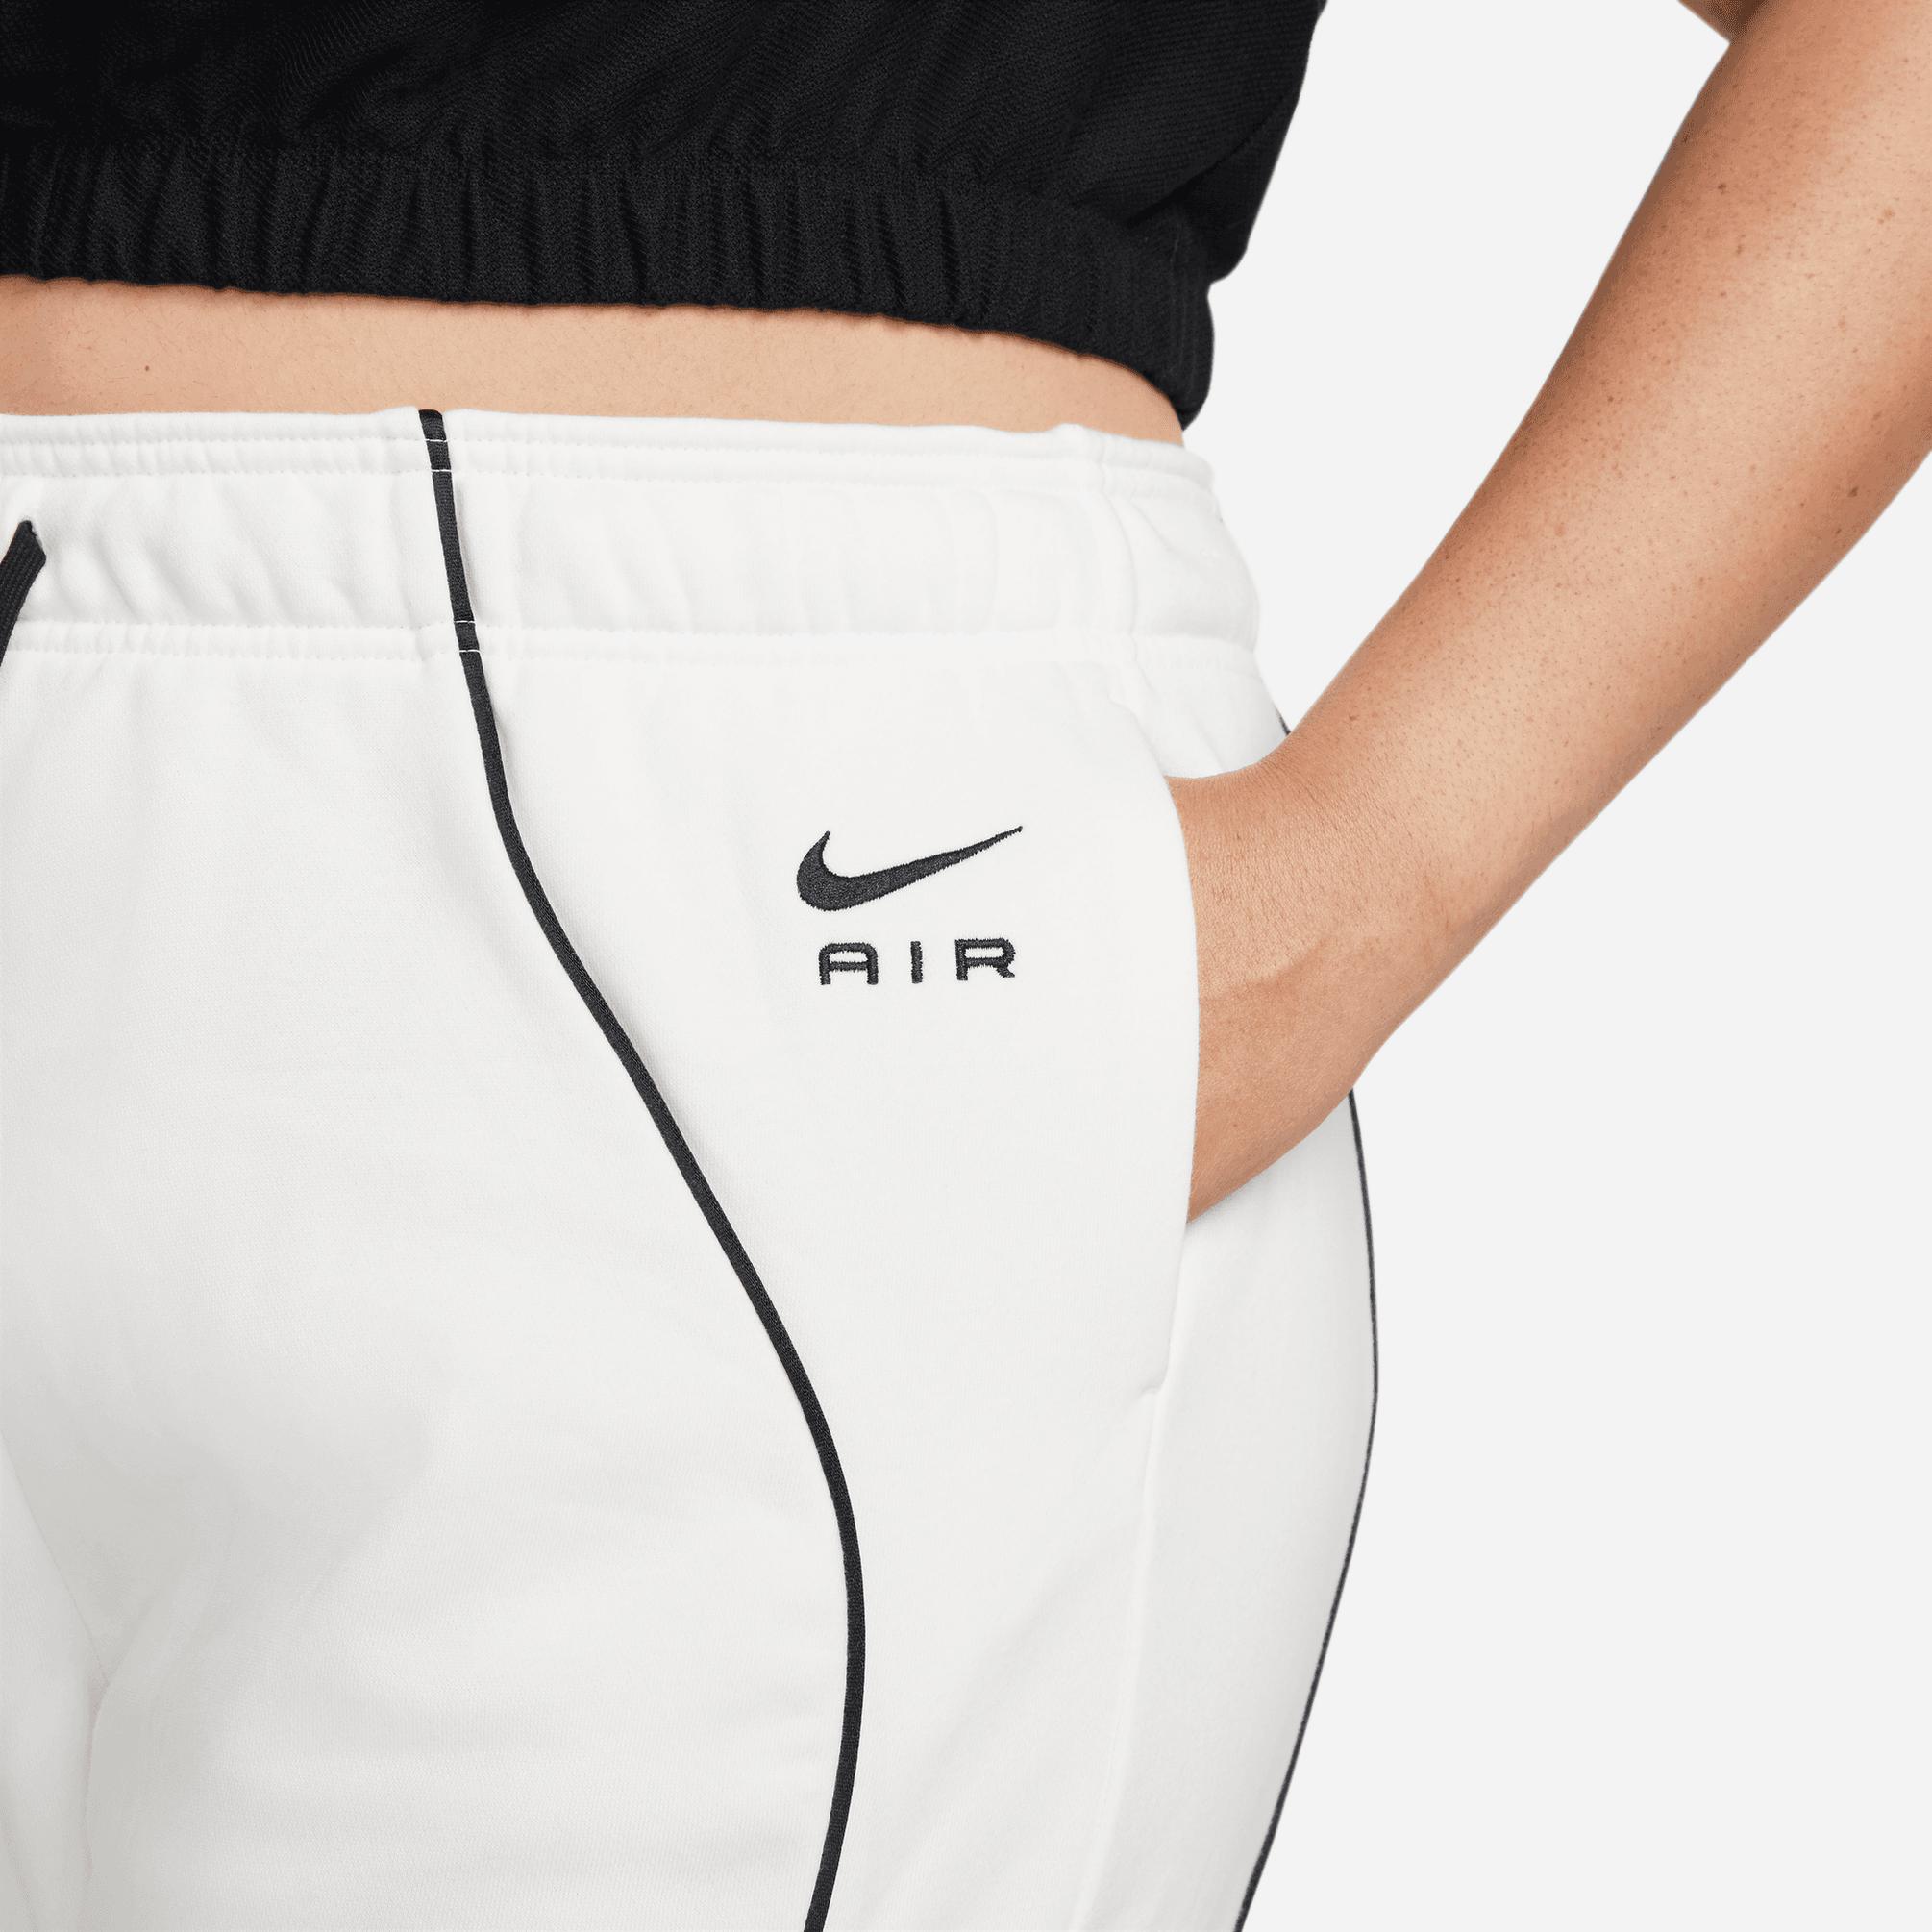  Nike Sportswear Kadın Beyaz Eşofman Altı